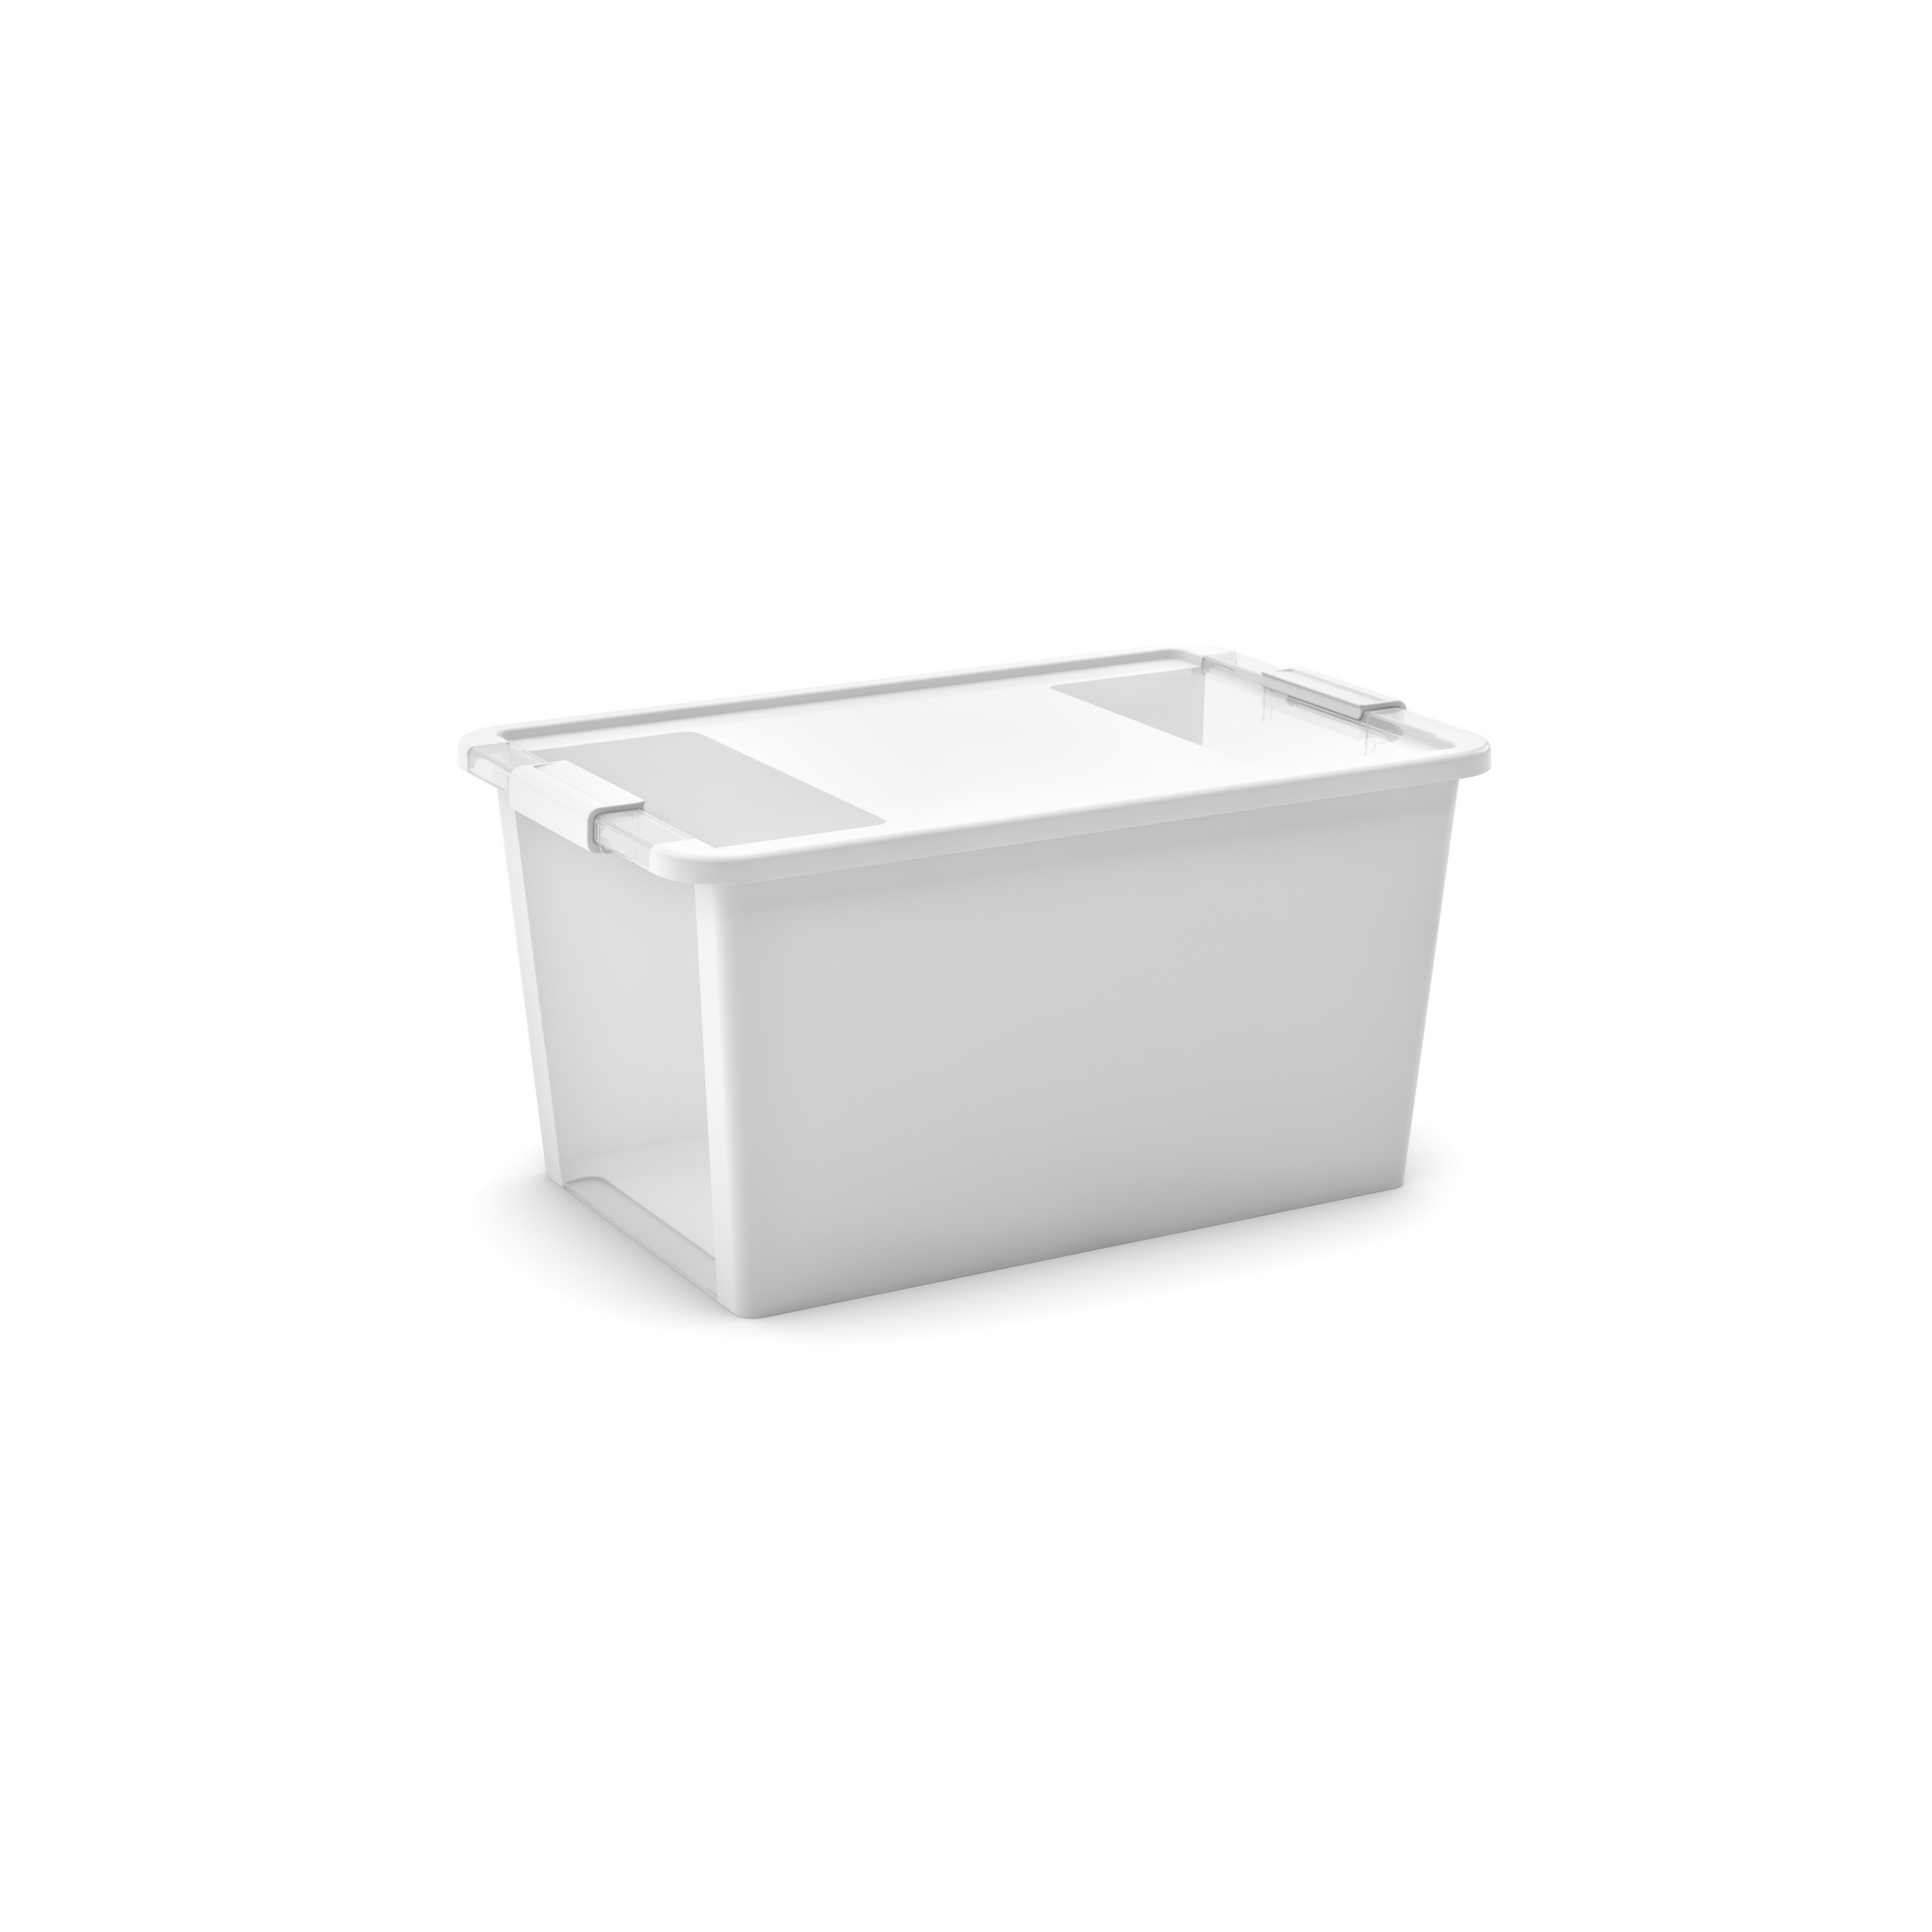 Aufbewahrungsbox 'BI Box L' weiß / transparent 40 l 55 x 35 x 28 cm + product picture